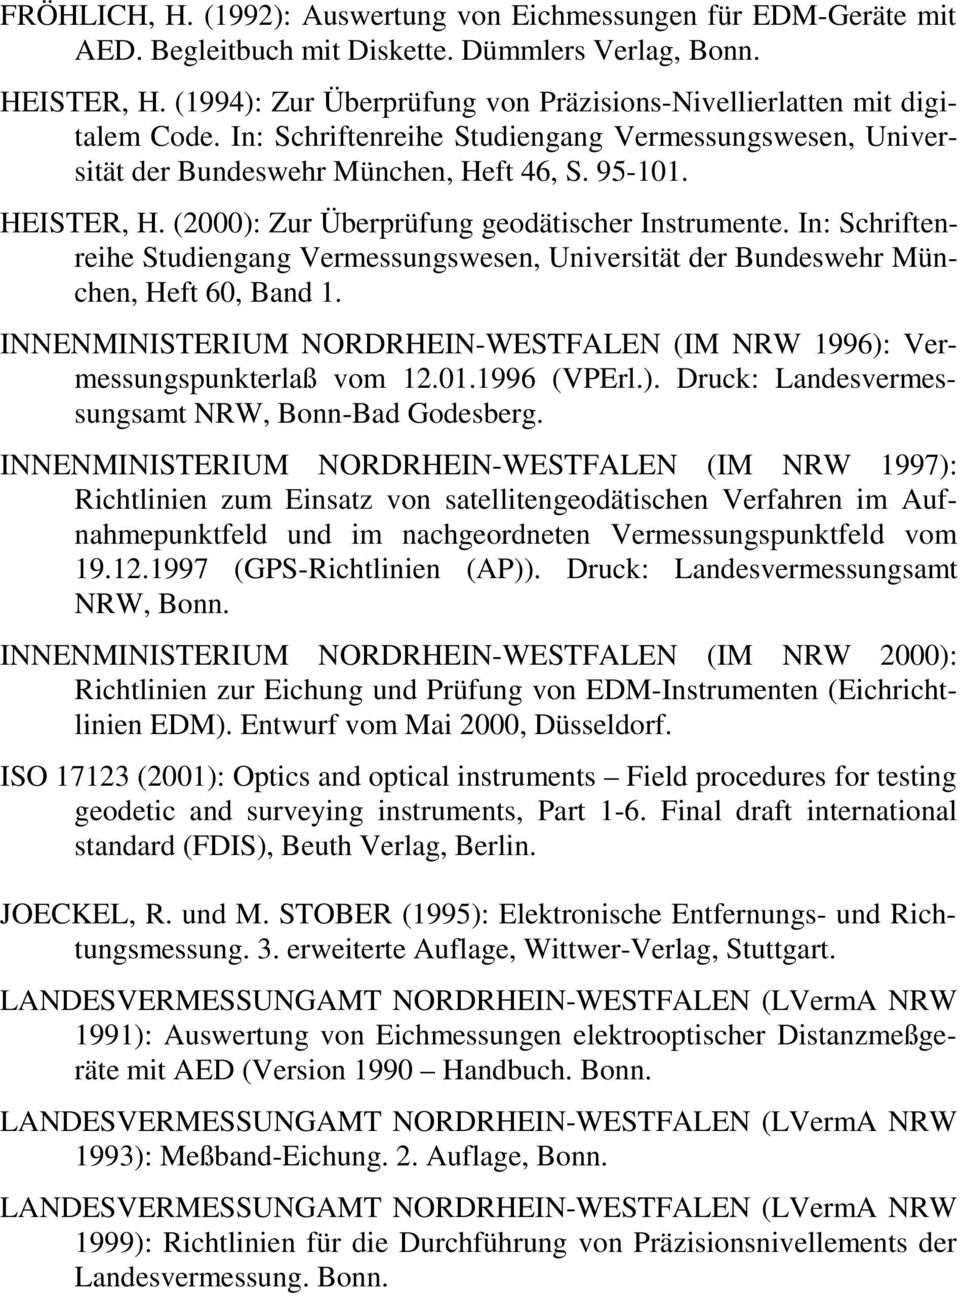 (2000): Zur Überprüfung geodätischer Instrumente. In: Schriftenreihe Studiengang Vermessungswesen, Universität der Bundeswehr München, Heft 60, Band 1.